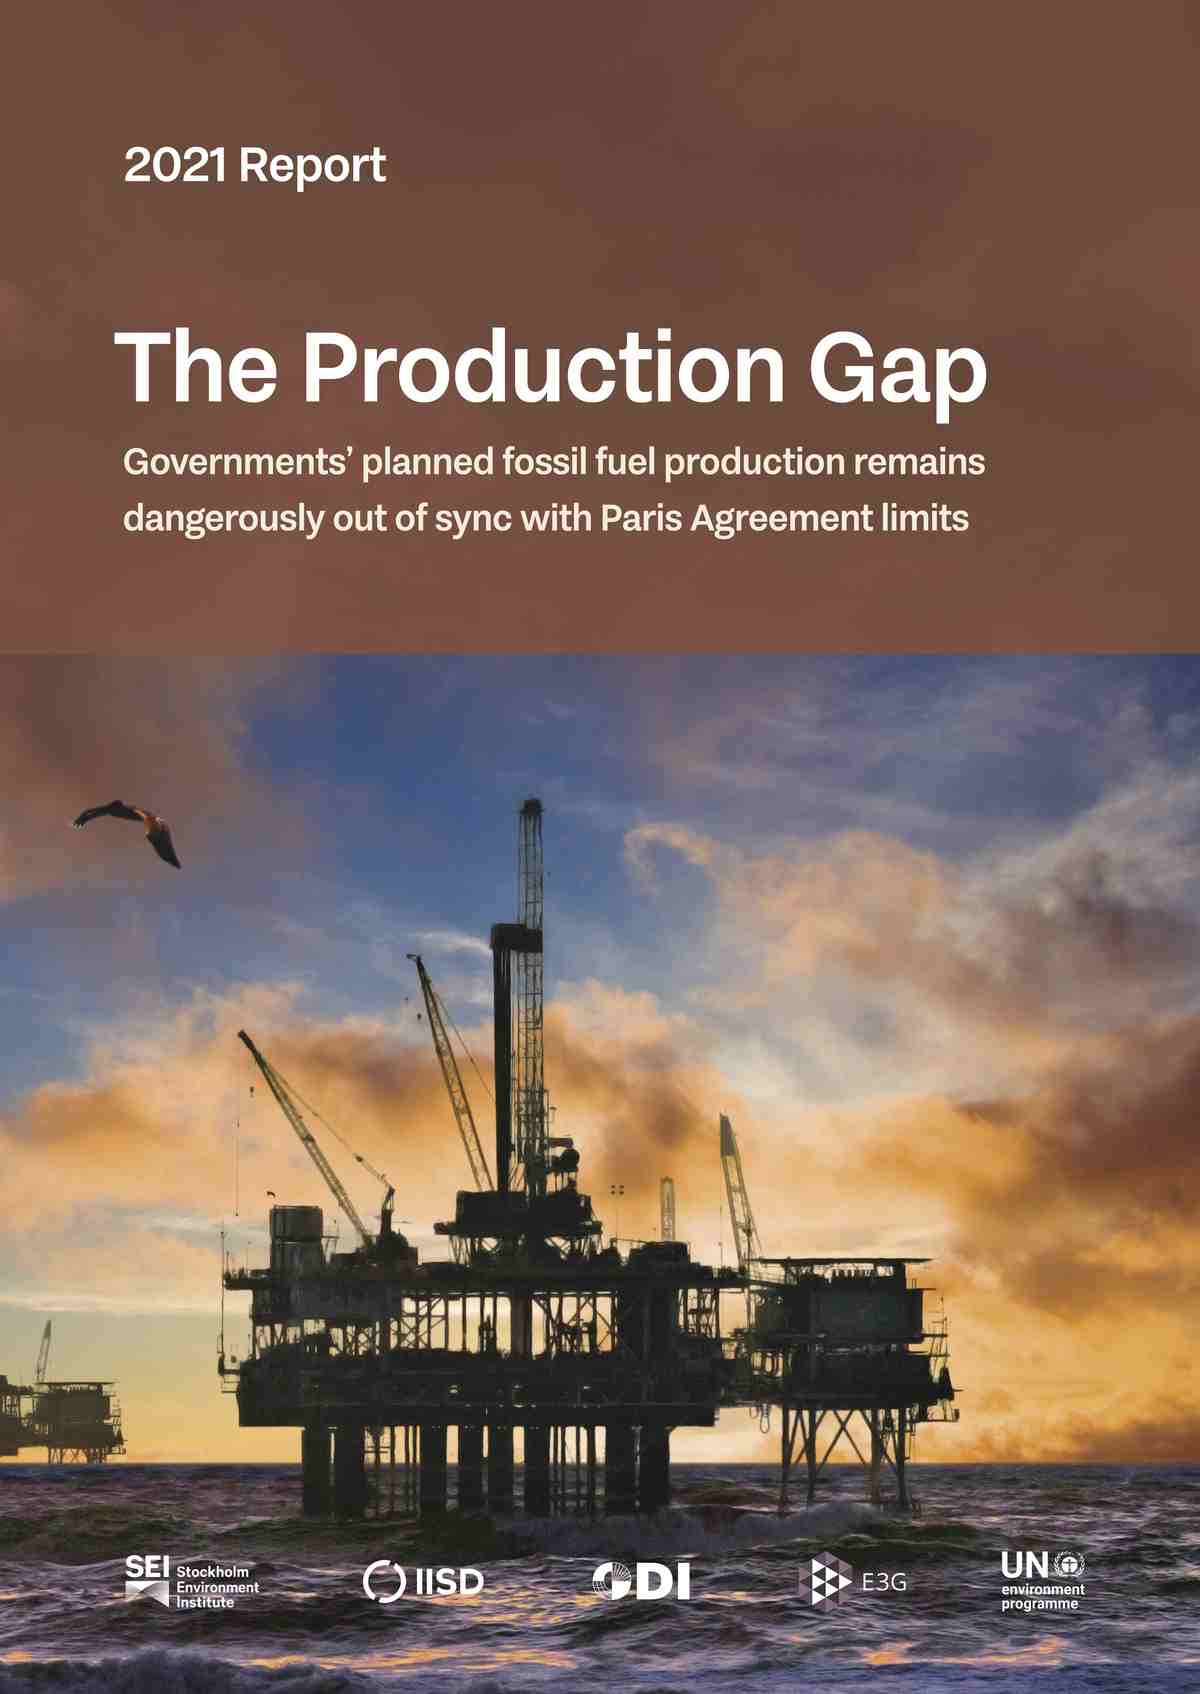 تقرير فجوة الإنتاج لعام 2021، الصادر عن معاهد بحوث رائدة وبرنامج الأمم المتحدة للبيئة